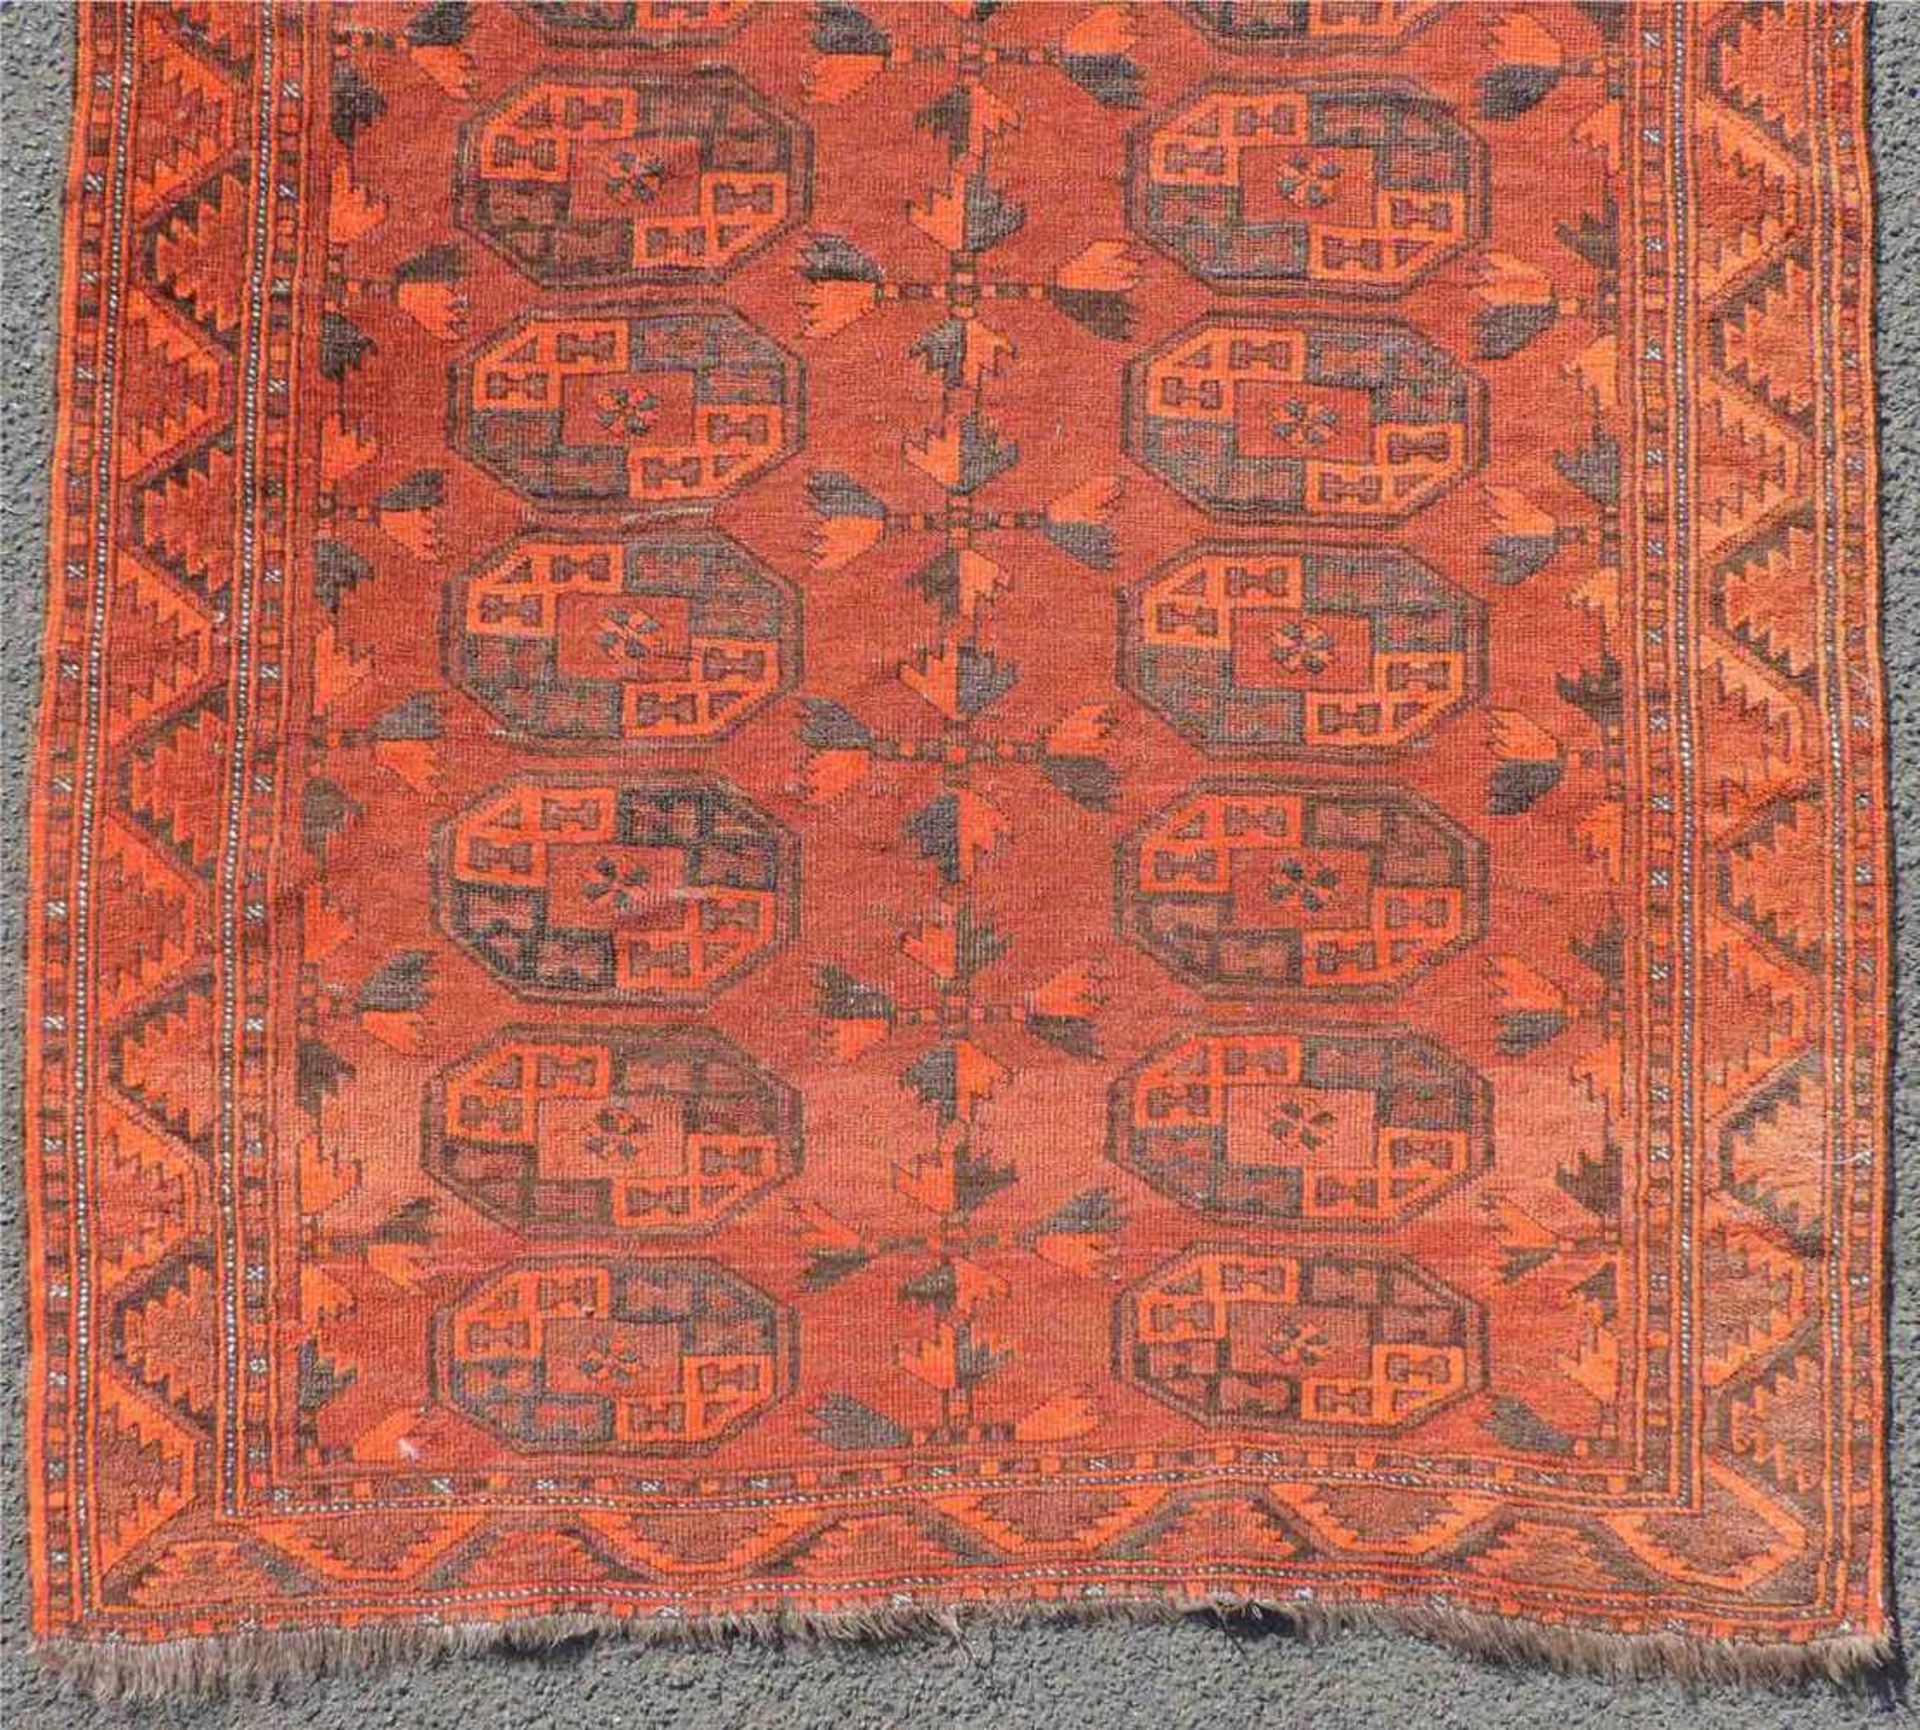 Ersari Stammesteppich. Turkmenistan. Antik, um 1900.182 cm x 98 cm. Handgeknüpft. Wolle auf Wolle. - Bild 2 aus 7